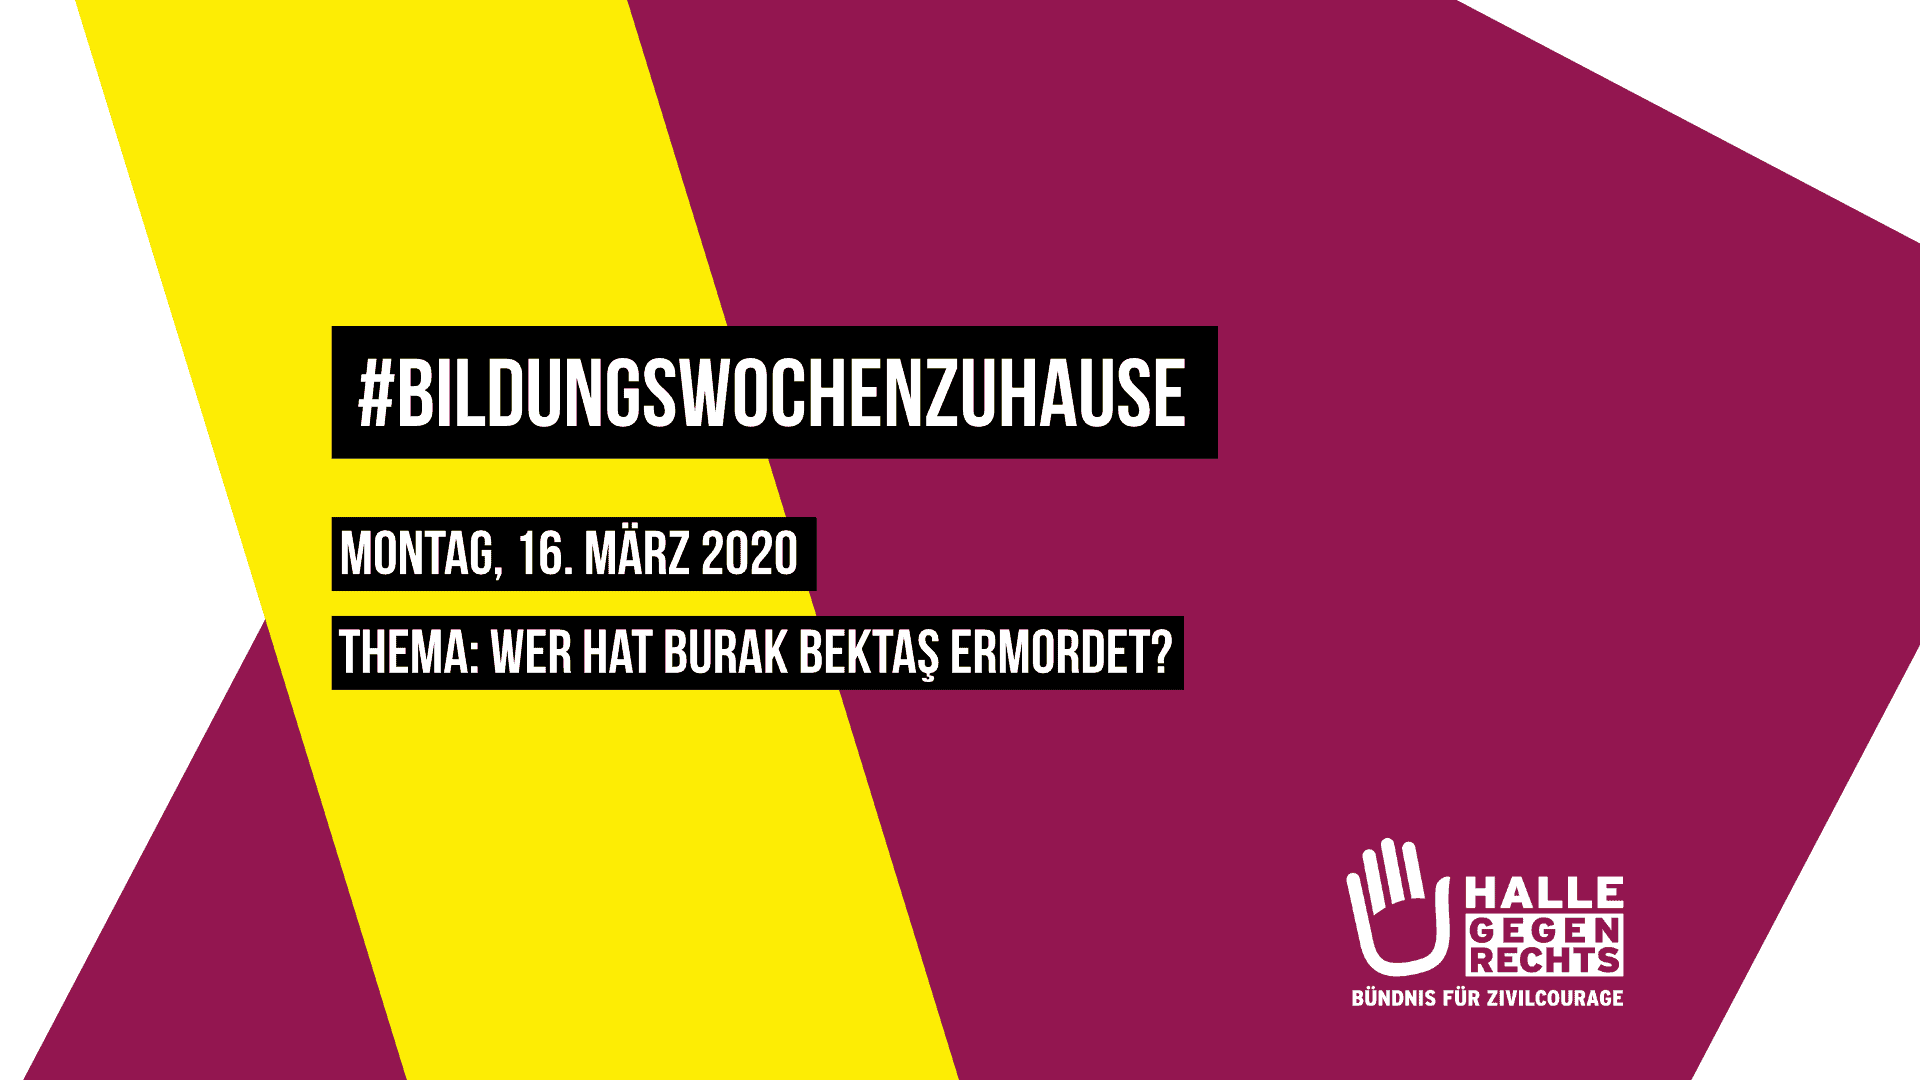 BildungswochenzuHause Montag, 16. März 2020 Thema: Wer hat Burak Bektaş ermordet?, Logo von Halle gegen Rechts, Hintergrund beerenfarben und gelb